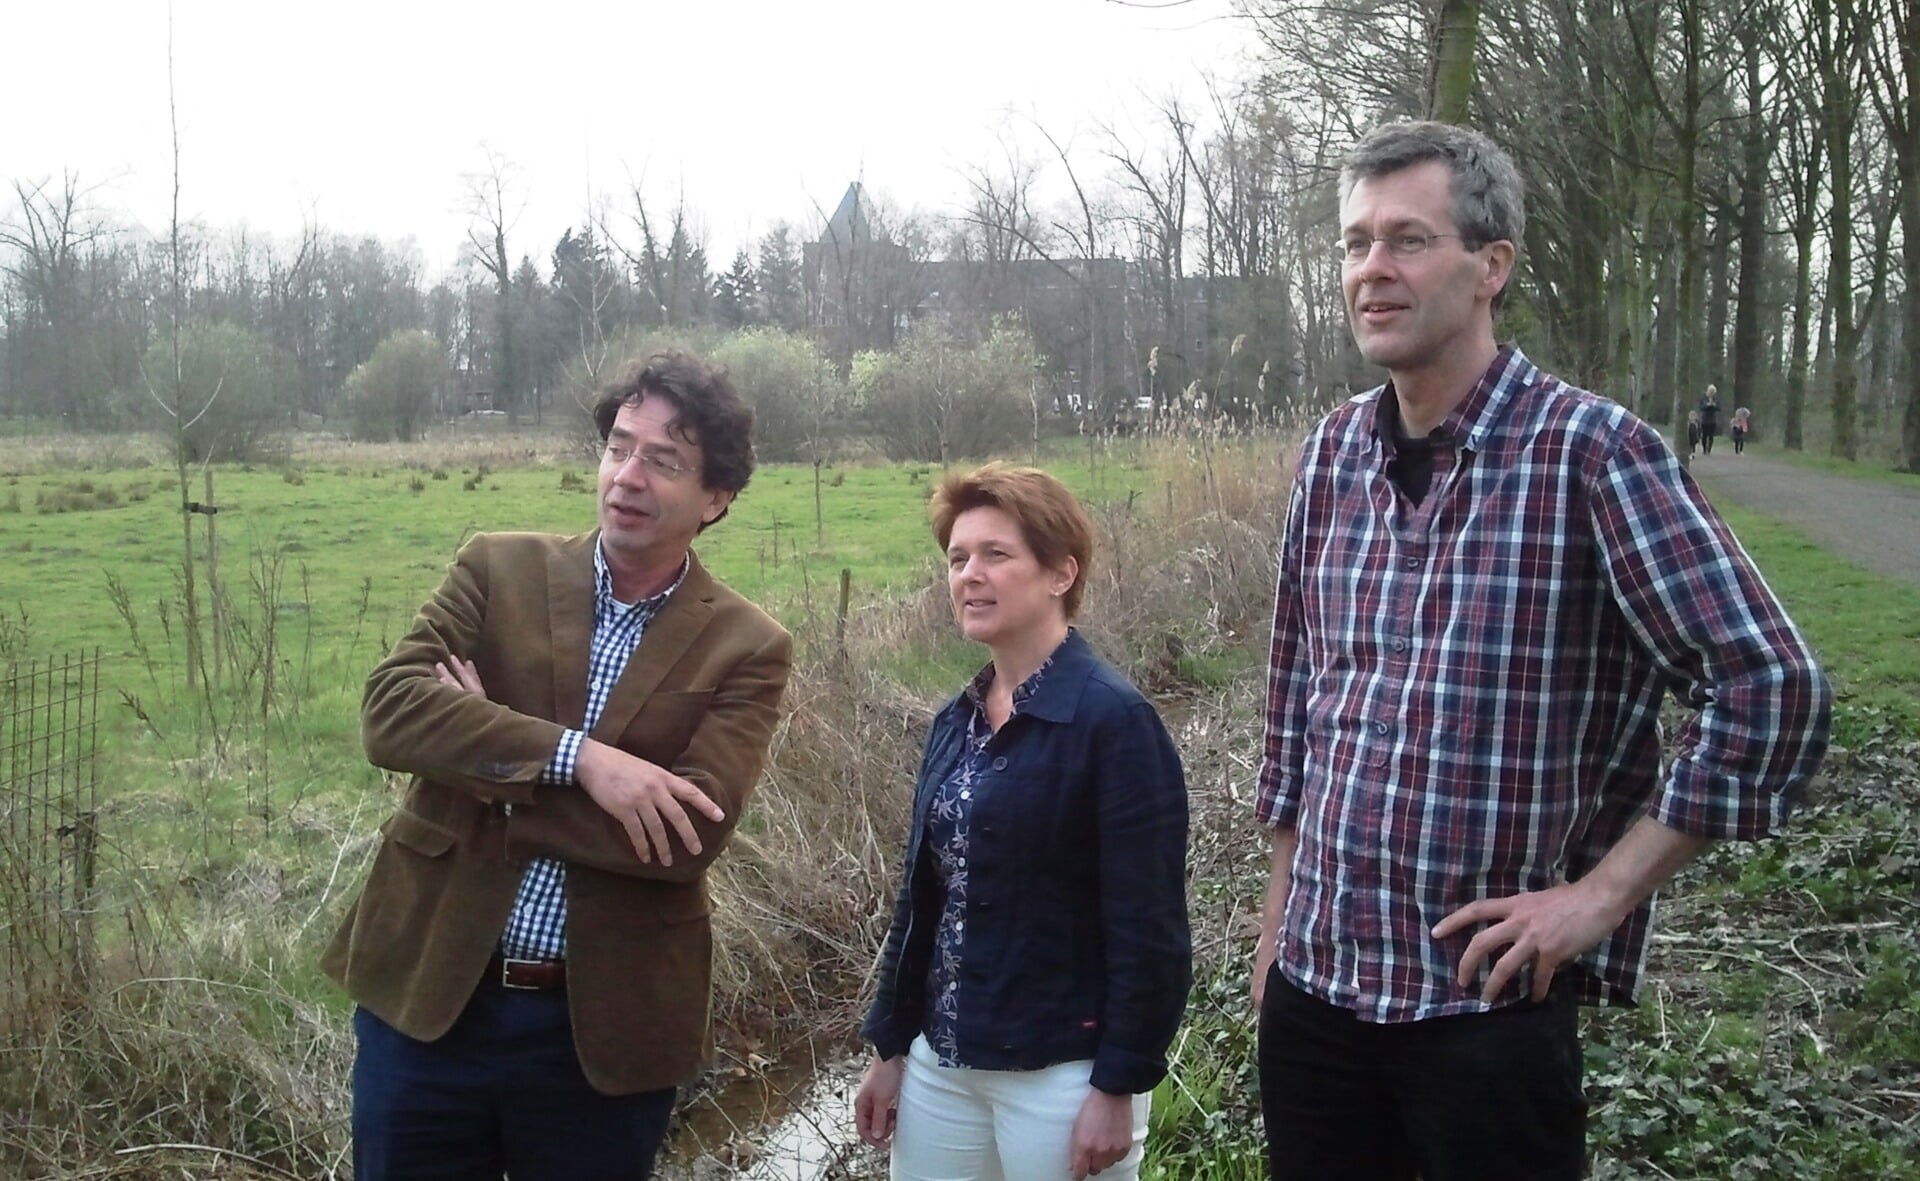 Joost van Liebergen, Sylvia van Gulik en Toine Cooijmans richtten twee jaar geleden een stichting op om de Dommelbimd te behouden als natuurgebied en zamelden geld in om het gebied aan te kopen. Maandag werd het gebied officieel overgedragen aan de stichting Dommelbimd.